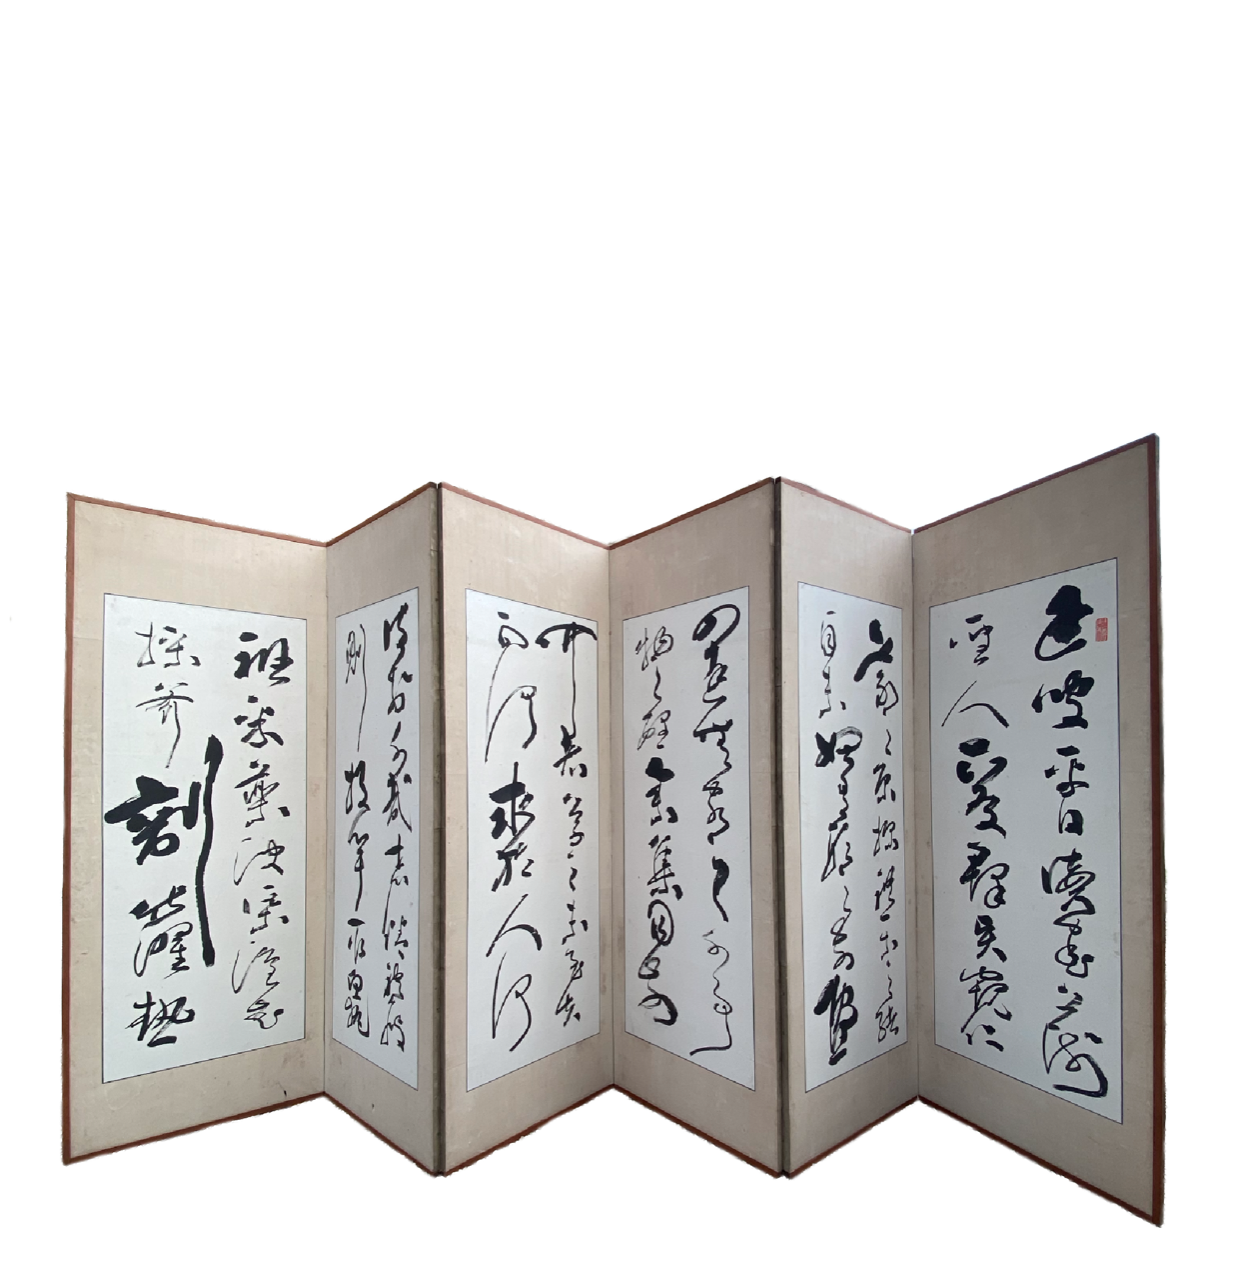 Paire de paravents  6 feuilles orns d'une suite de calligraphies  par Takabayashi Nobuyoshi  高林信好 (1819-1897), Japon, 1878,  19me sicle.